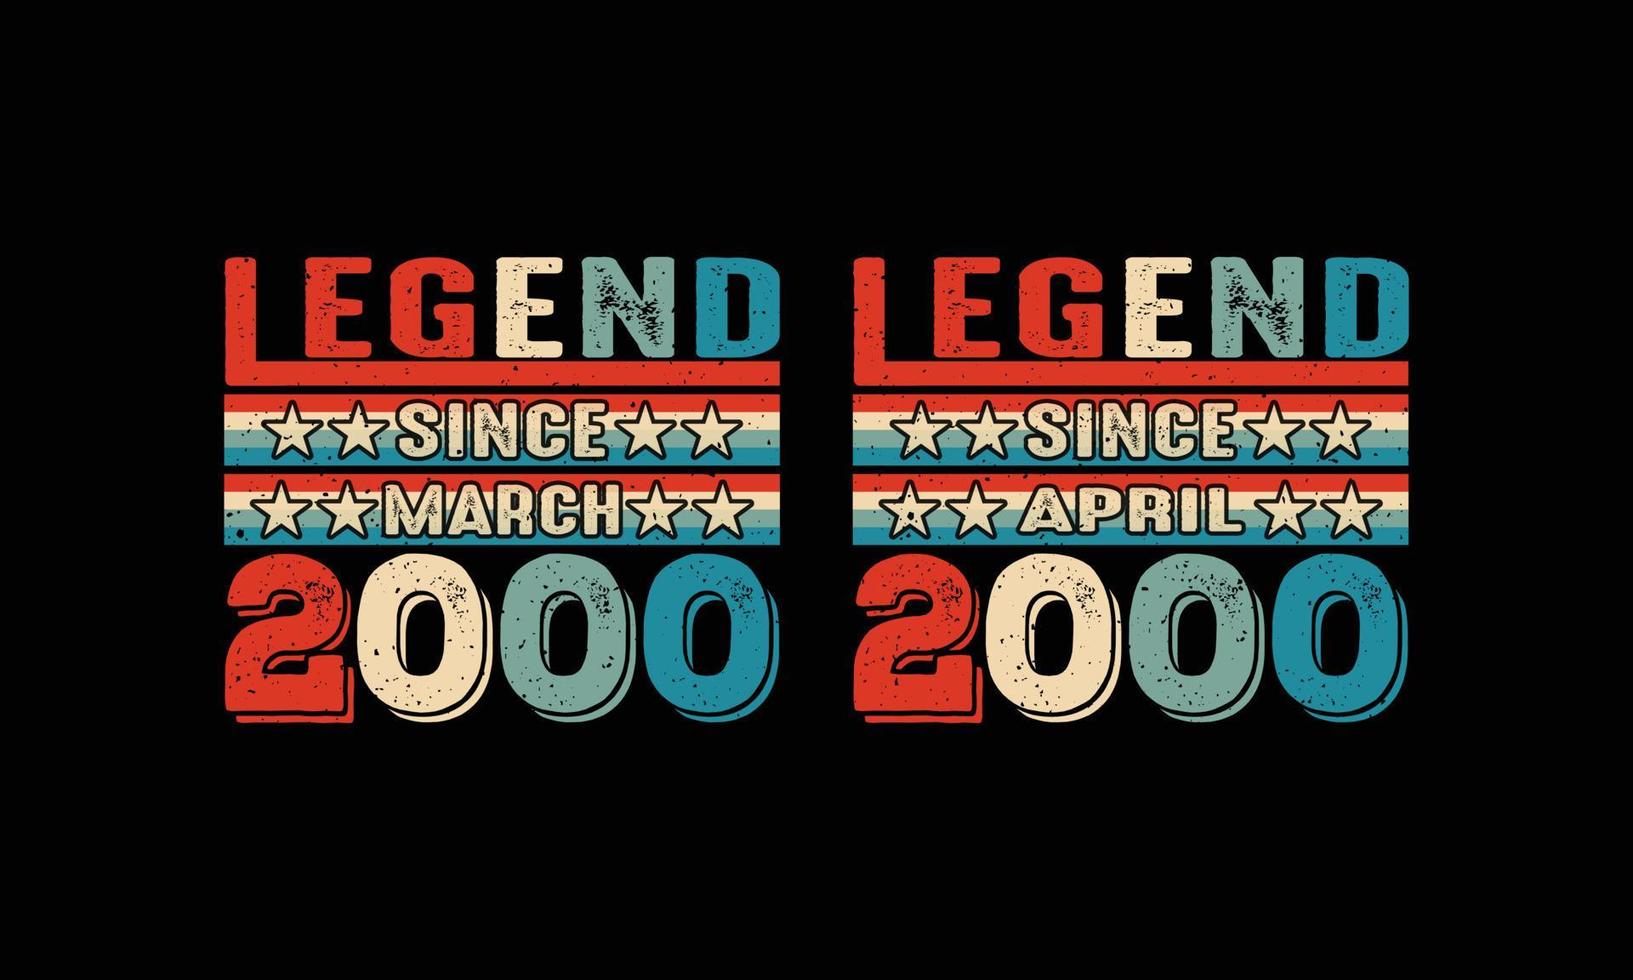 legende sinds maart en april-2000 t-shirtontwerp. vector